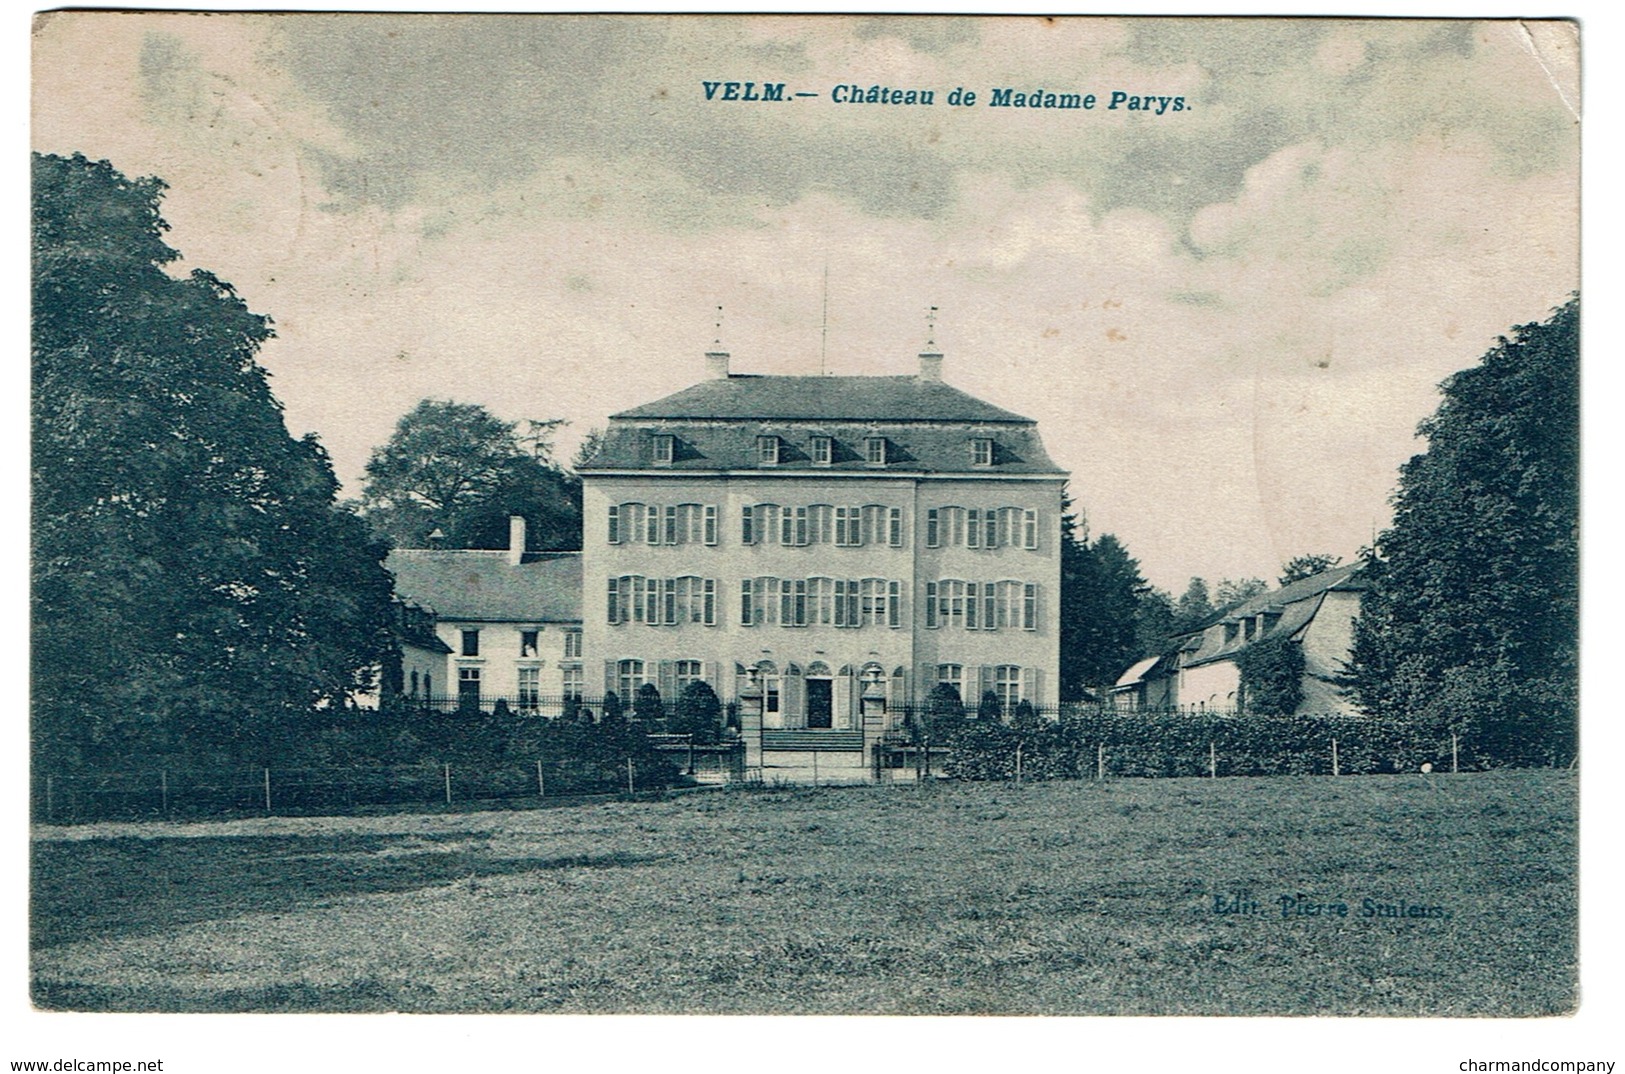 VELM - Château De Madame Parys - Circulée - Edit. Pierre Stuleirs - 2 Scans - Sint-Truiden